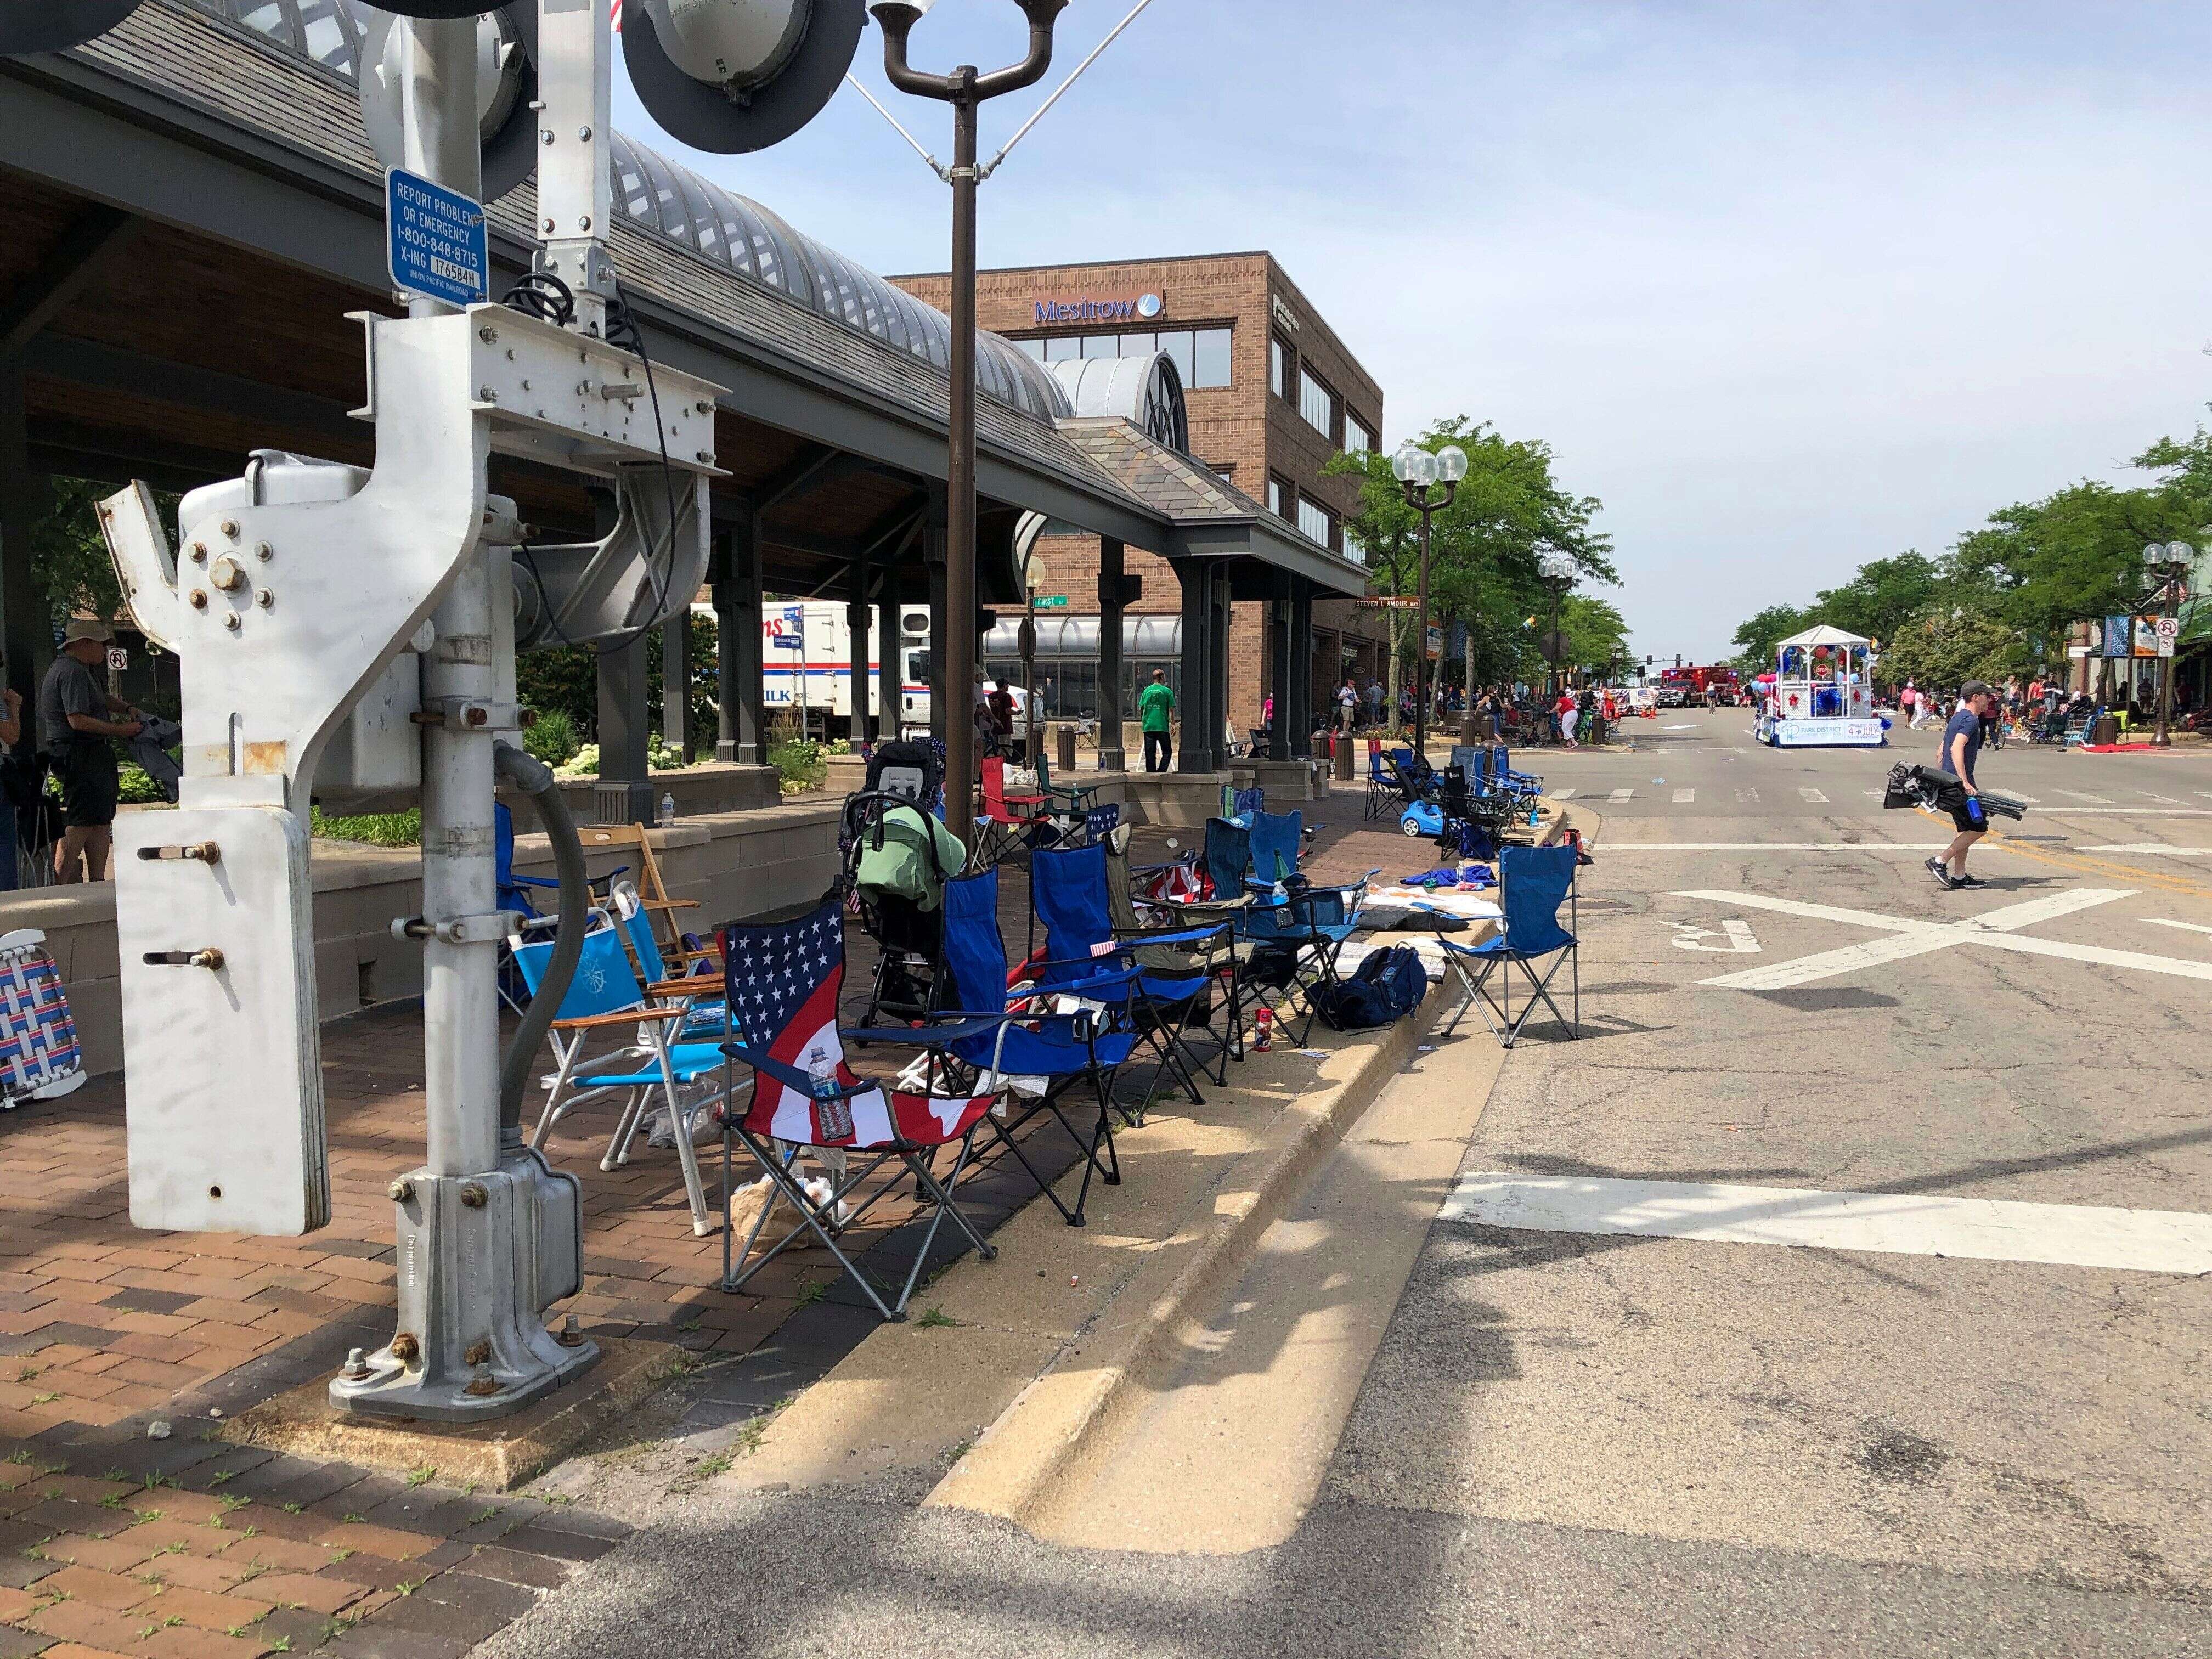 Des chaises vides après la fusillade lors d'un défilé à Highland Park, près de Chicago, le 4 juillet 2022.